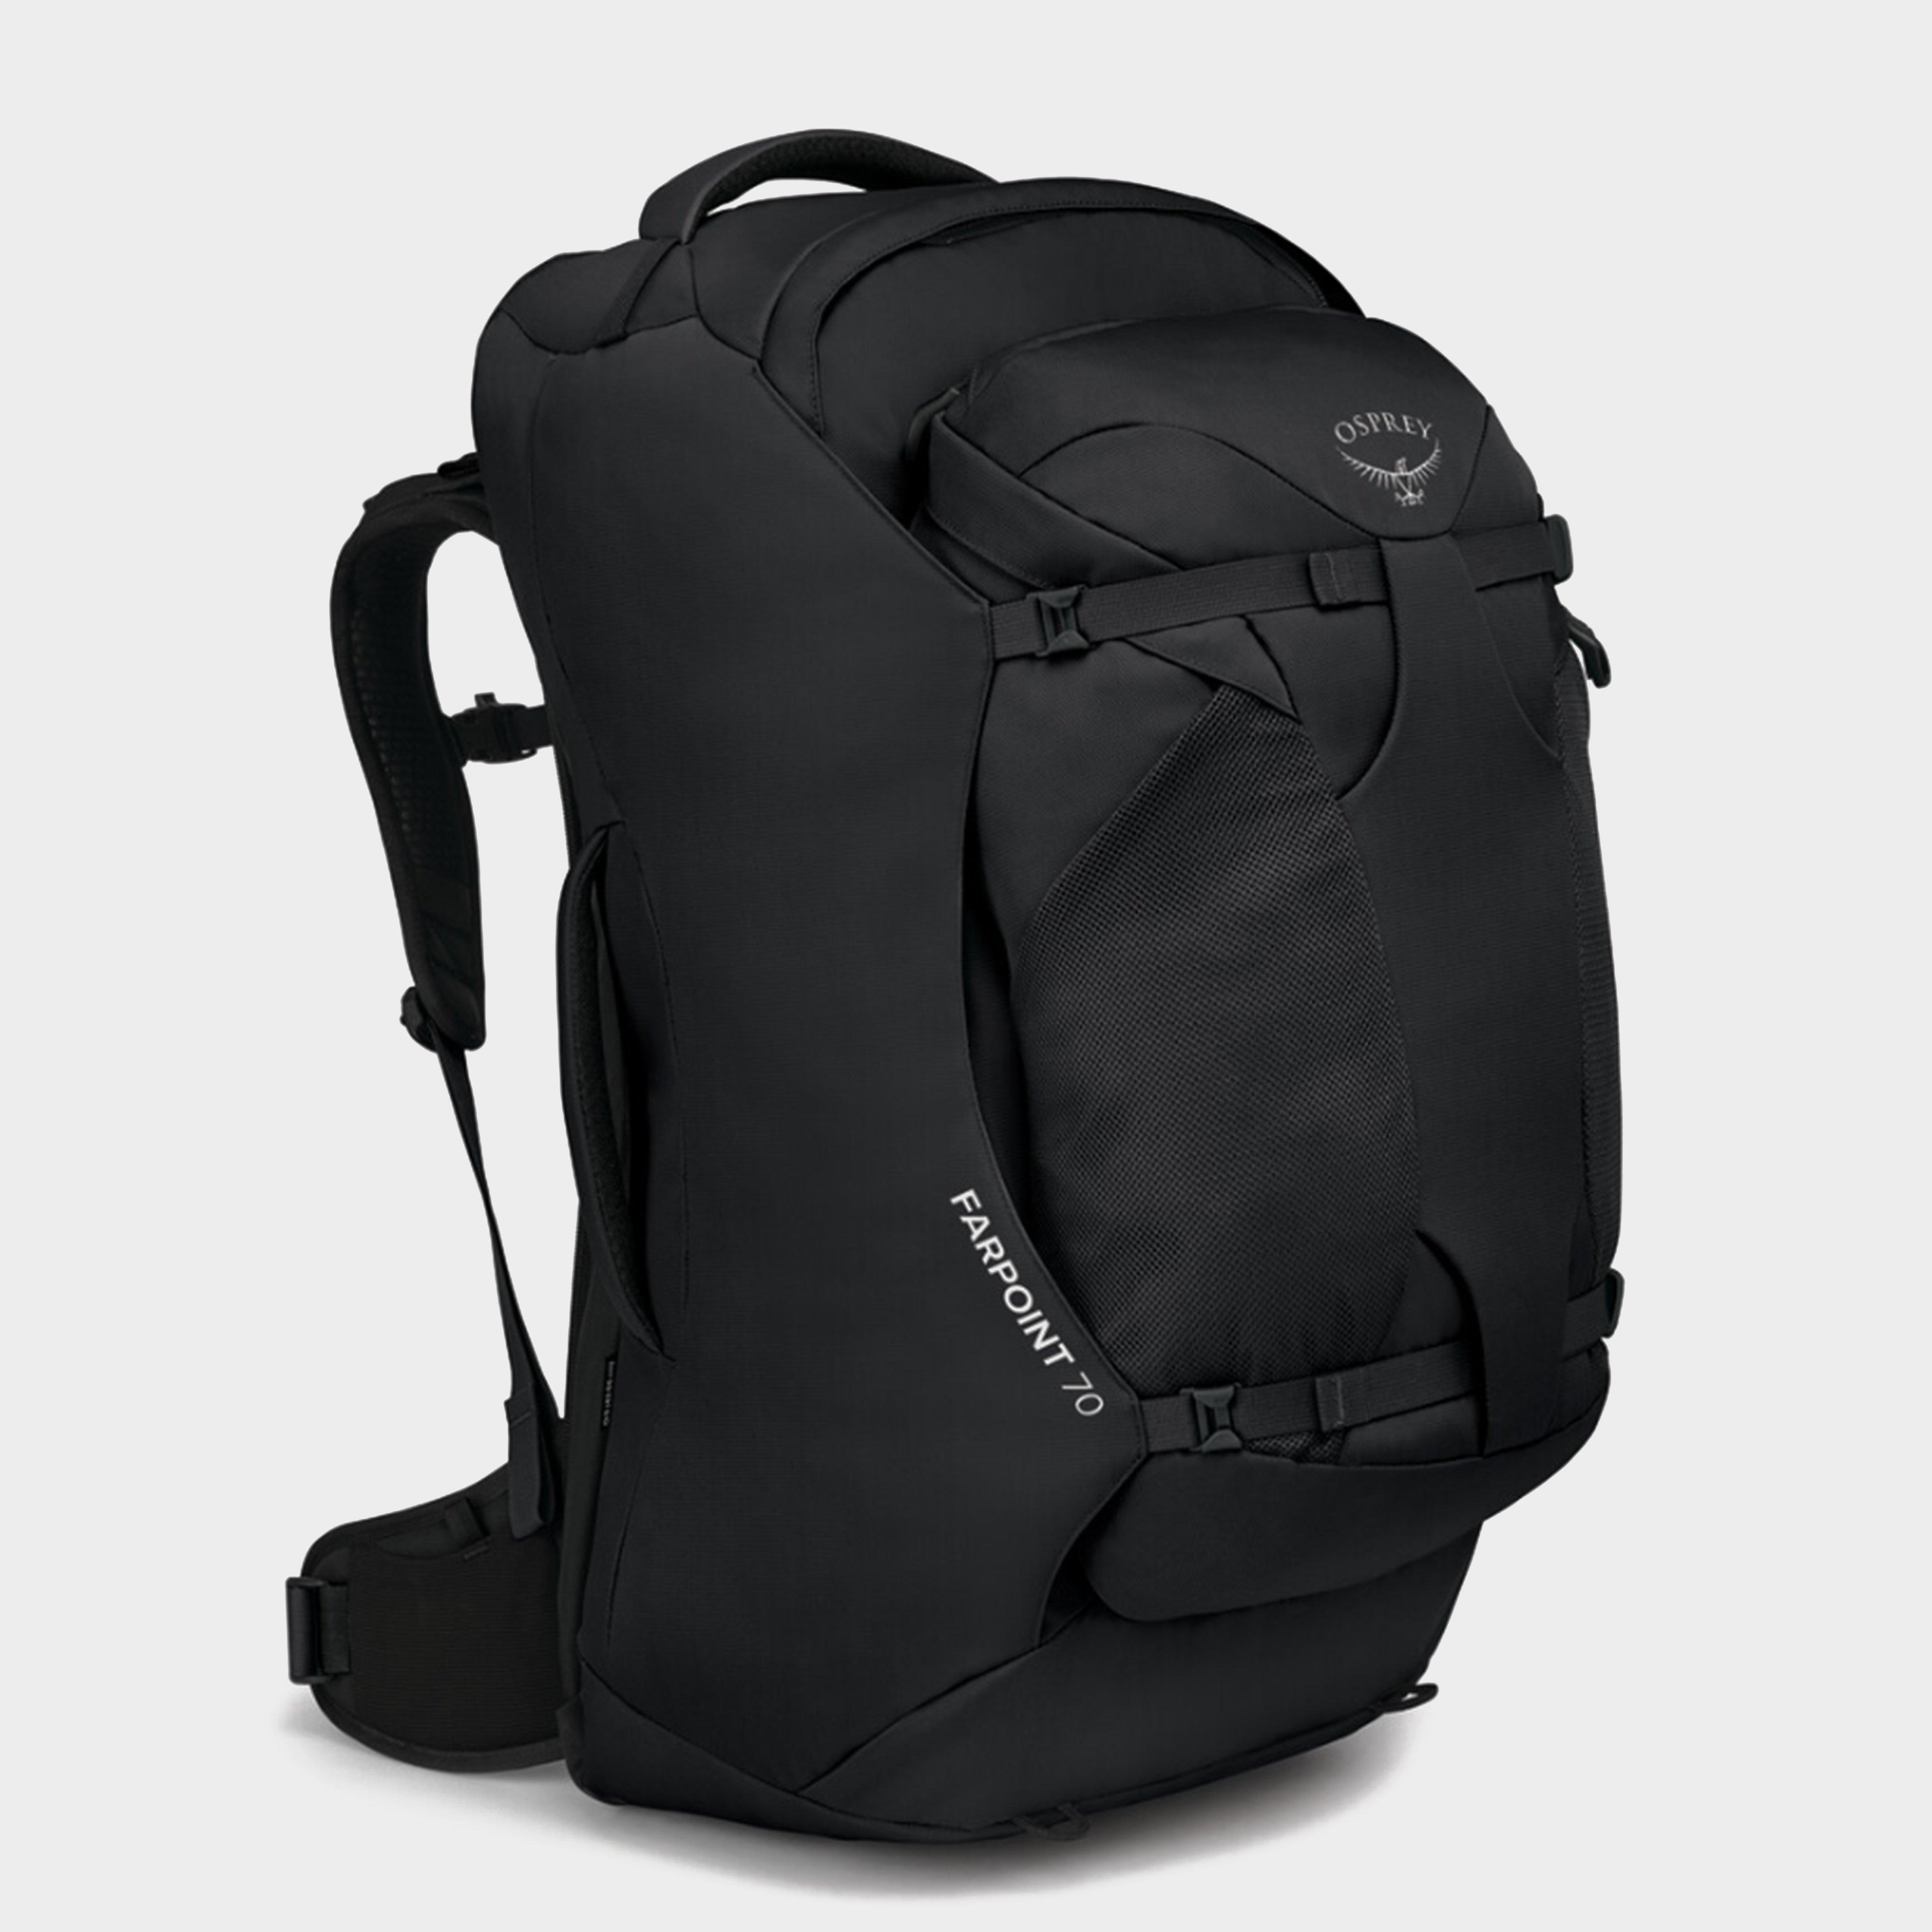  Osprey Farpoint 70 Litre Travel Backpack, Black